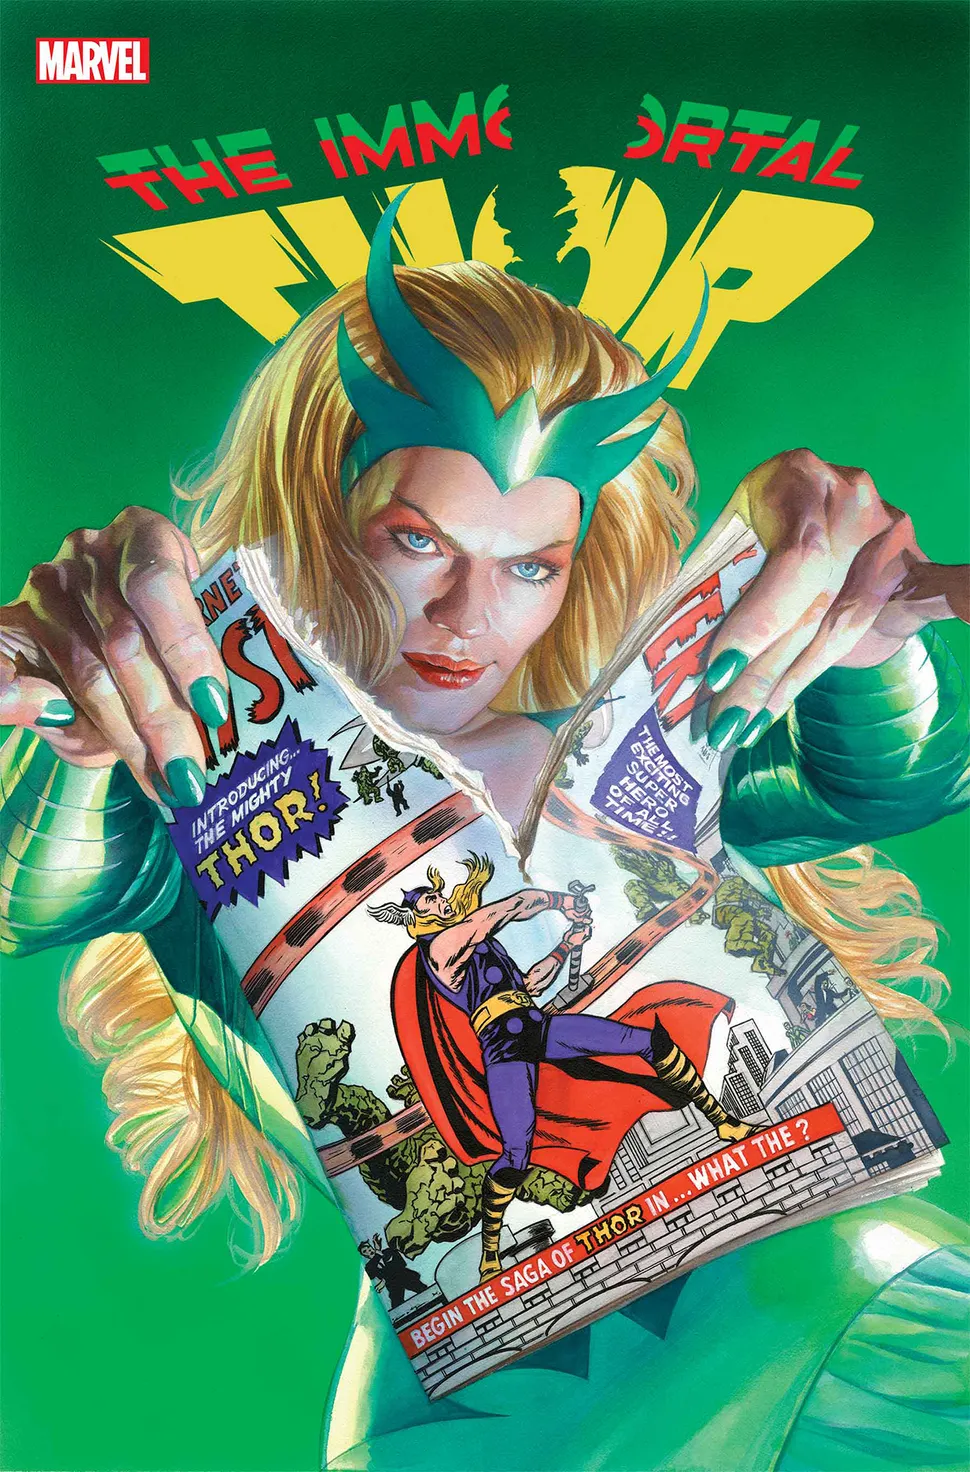 Thor liberal - Roxxon Presents Thor #1 - Marvel Comics - BLOG FAROFEIROS